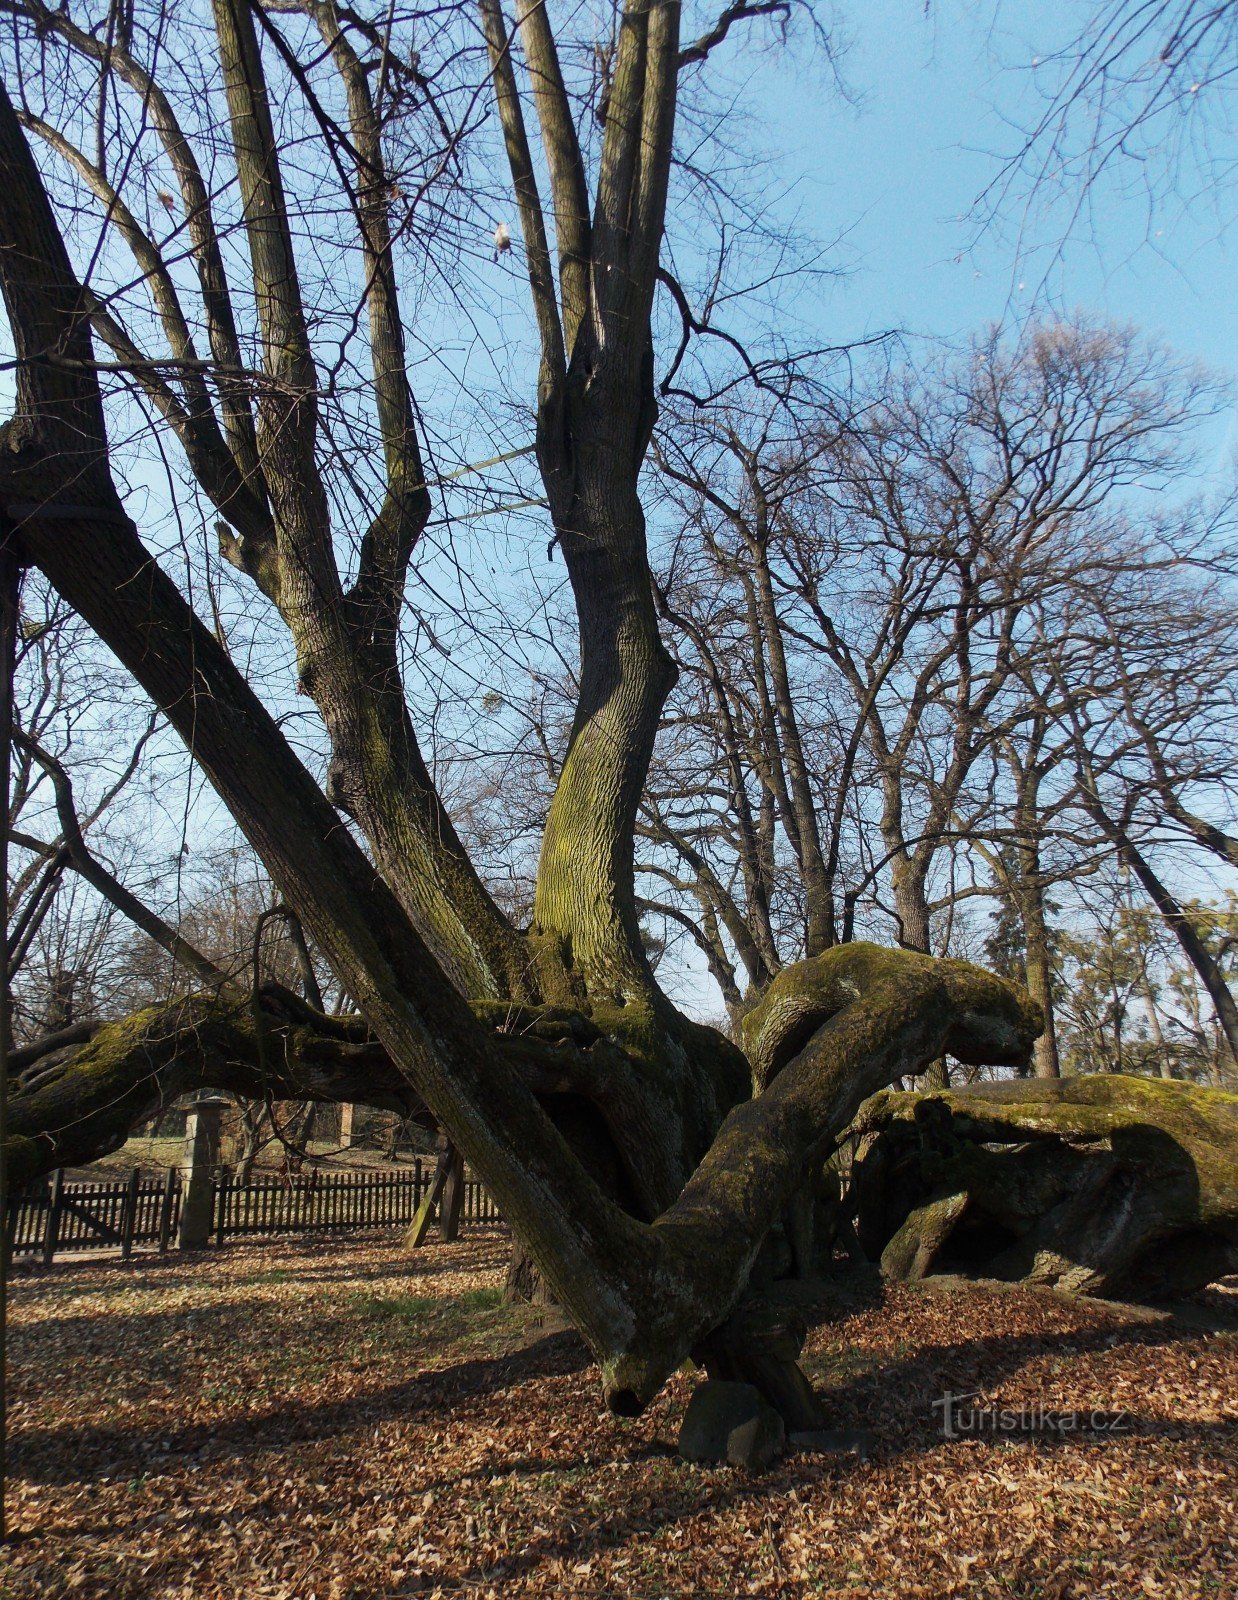 Uma característica interessante no parque do castelo Bzenec, uma antiga tília